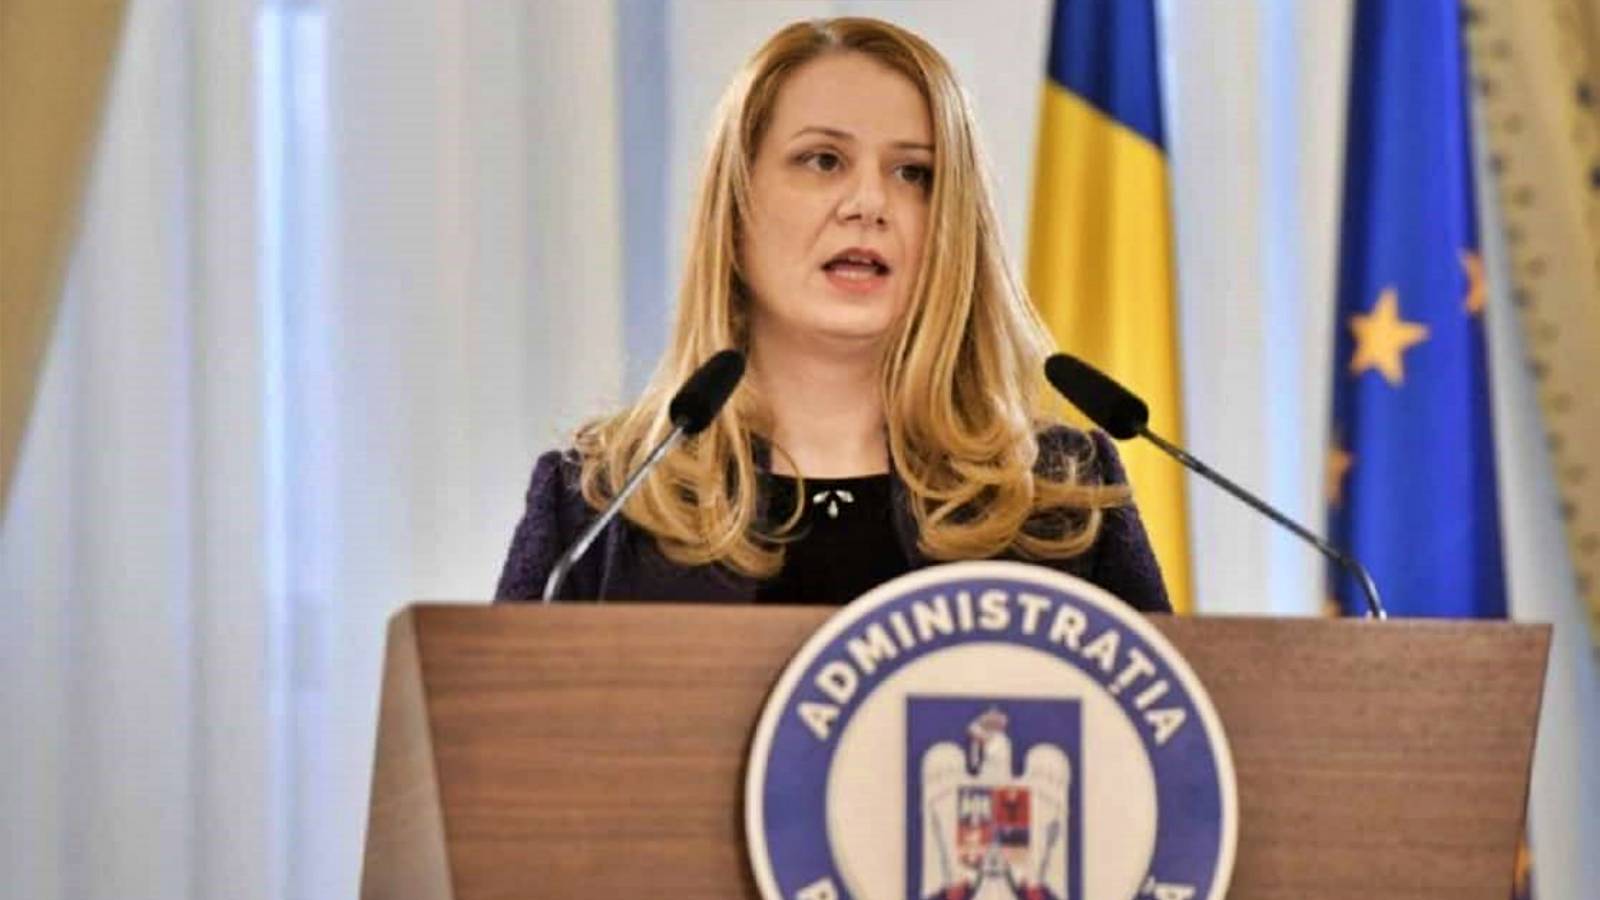 Il Ministro dell'Istruzione ha annunciato ufficialmente il provvedimento LAST TIME delle scuole per gli studenti rumeni